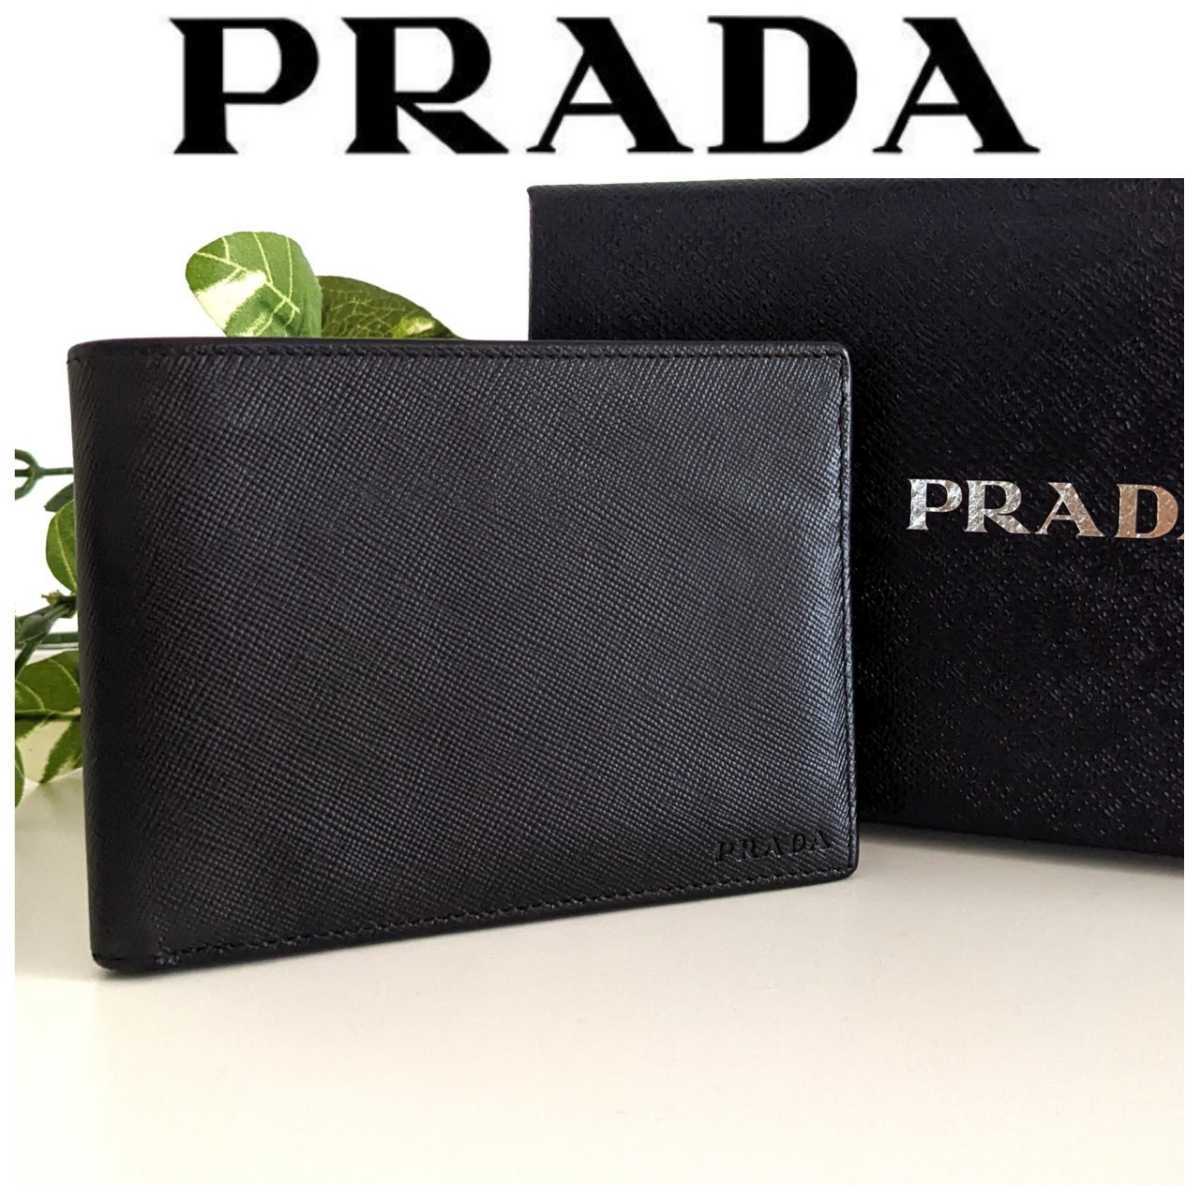 良品 PRADA プラダ サフィアーノ レザー 二つ折り財布 ヴィンテージ ウォレット イタリア製 シンプル ブラック 黒 レディース メンズ_画像1